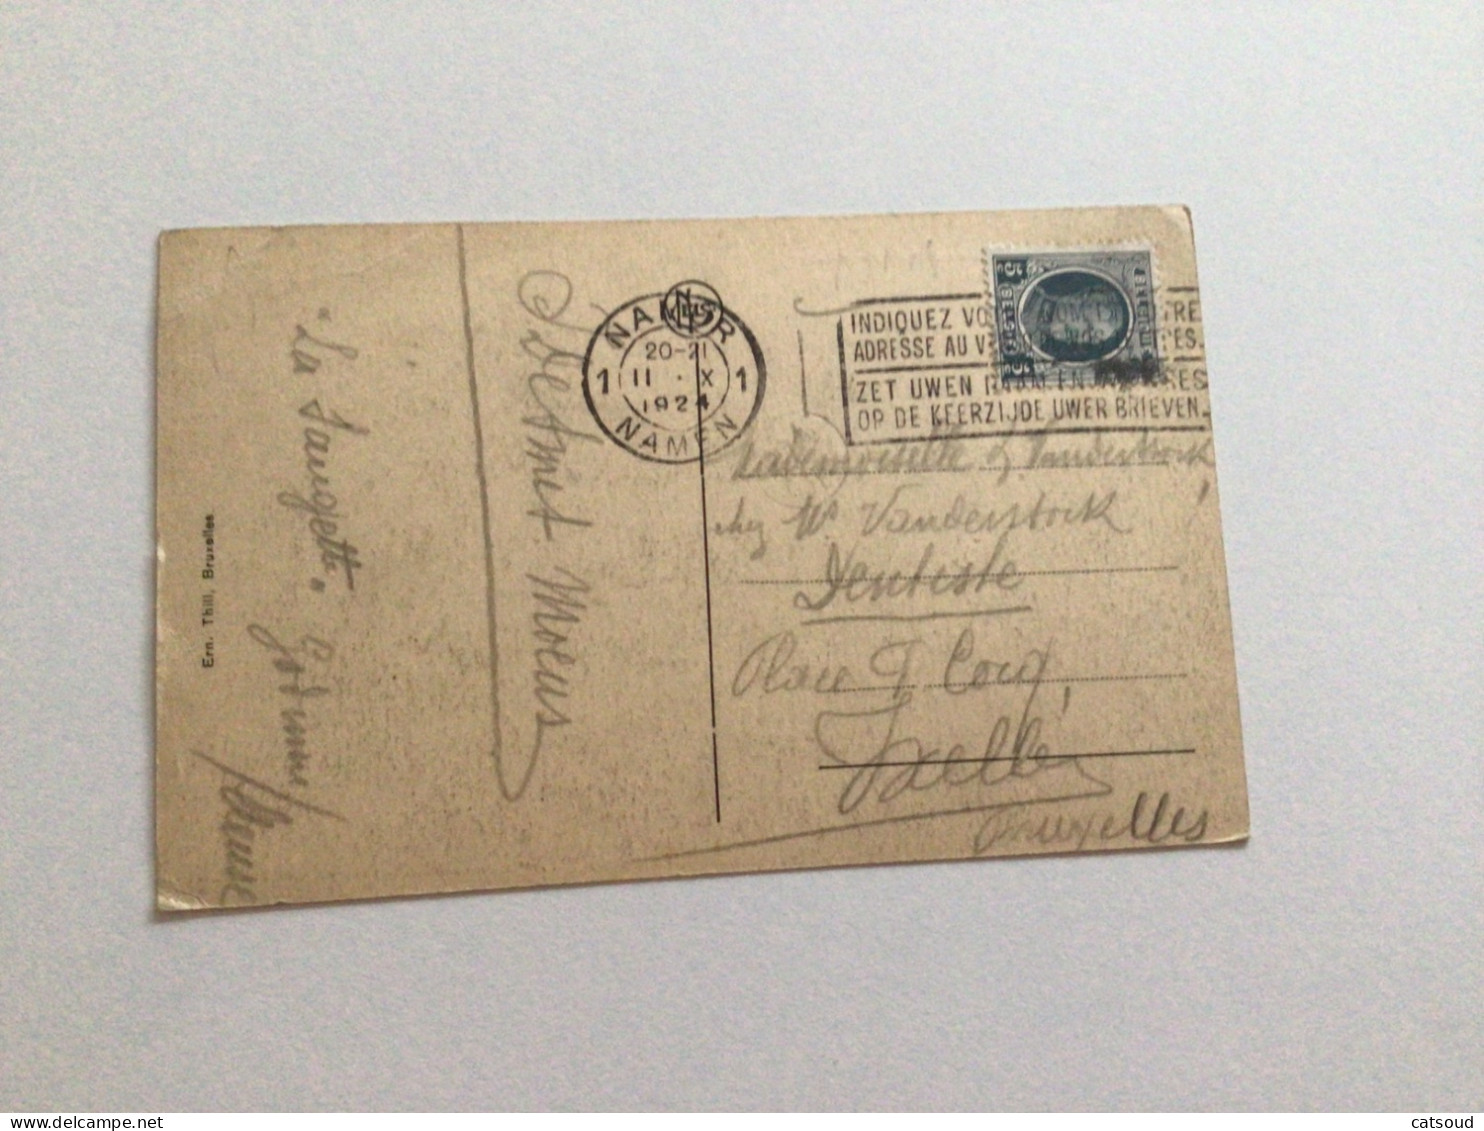 Carte Postale Ancienne (1924) Godinne Sanatorium De Mont-sur-Godinne - Yvoir